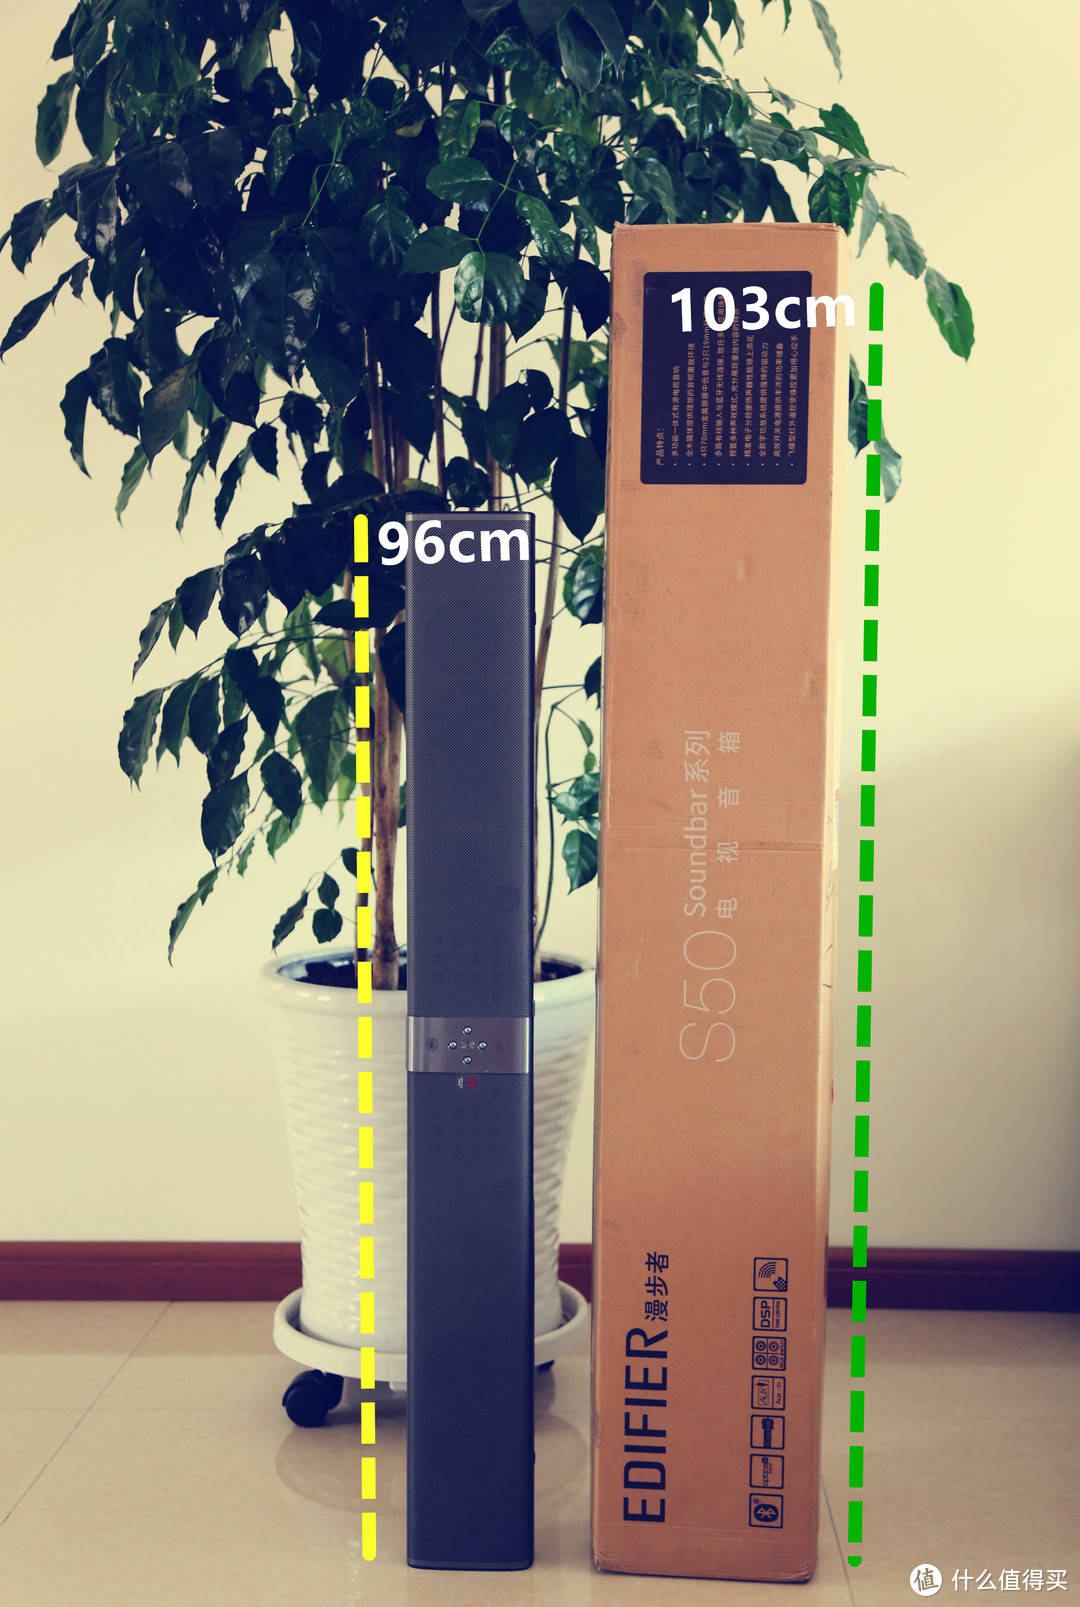 木质复古潮——漫步者S50 Soundbar音响评测